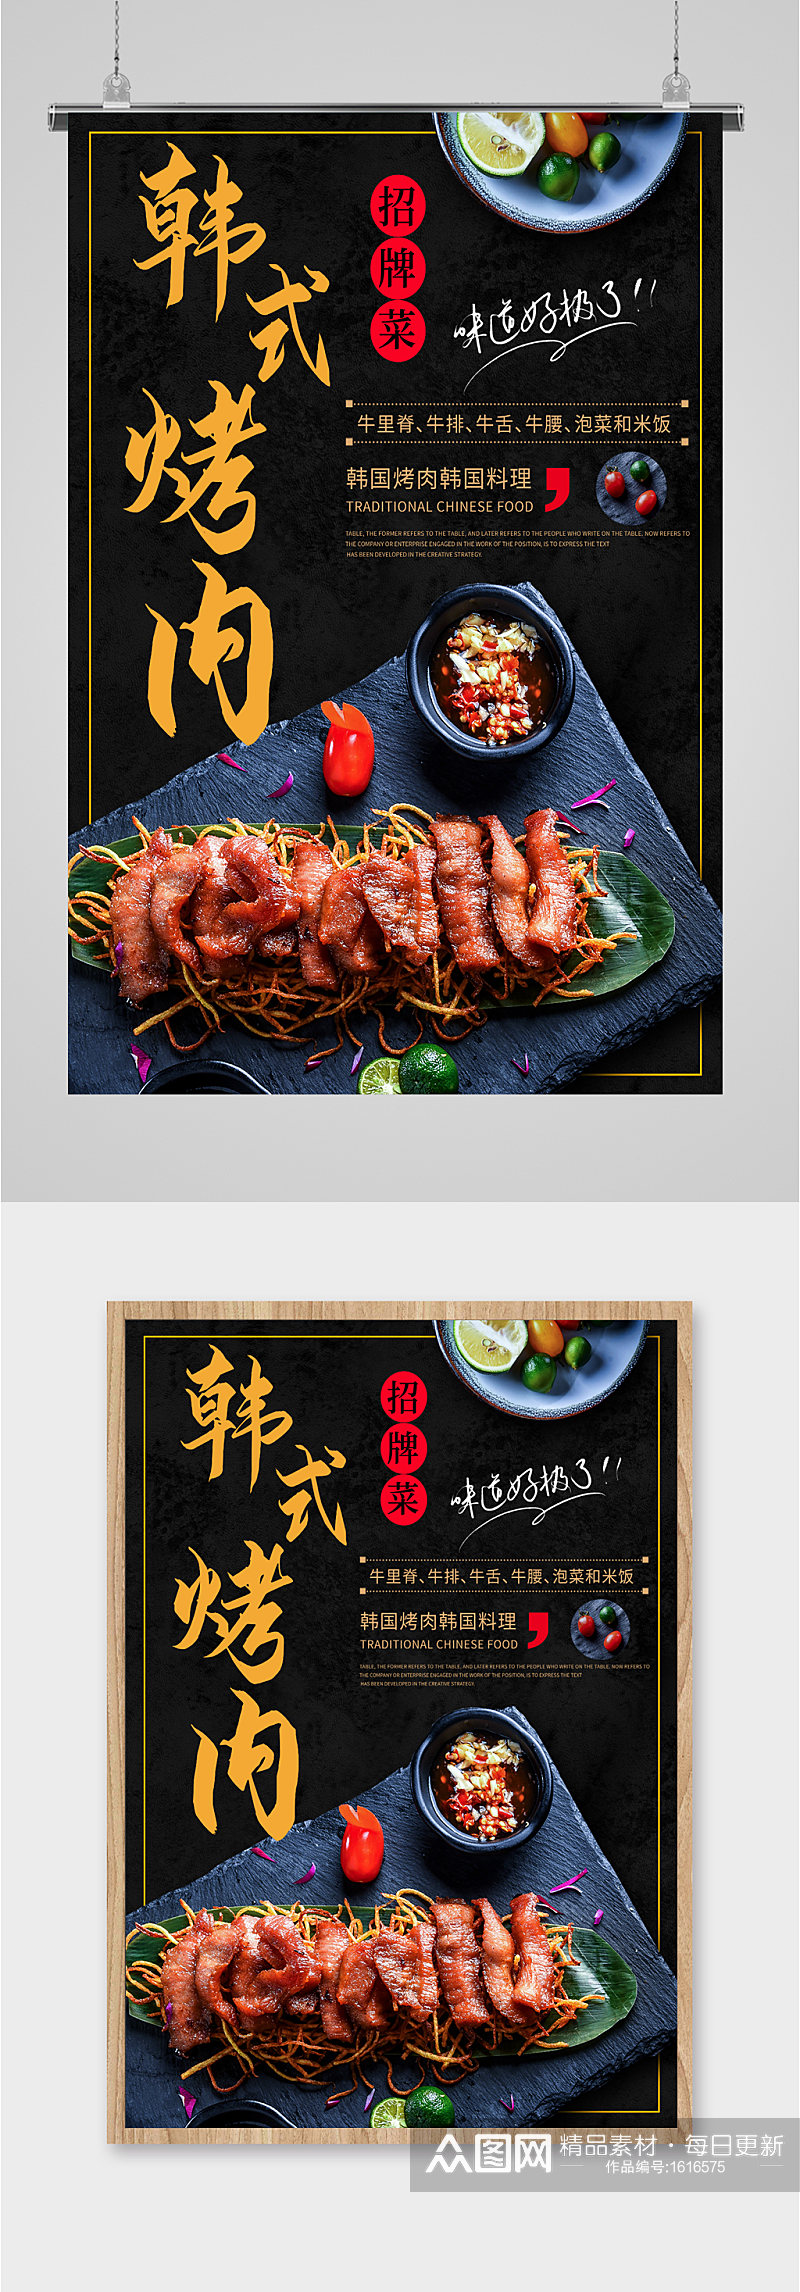 韩式烤肉黑色大气宣传海报素材